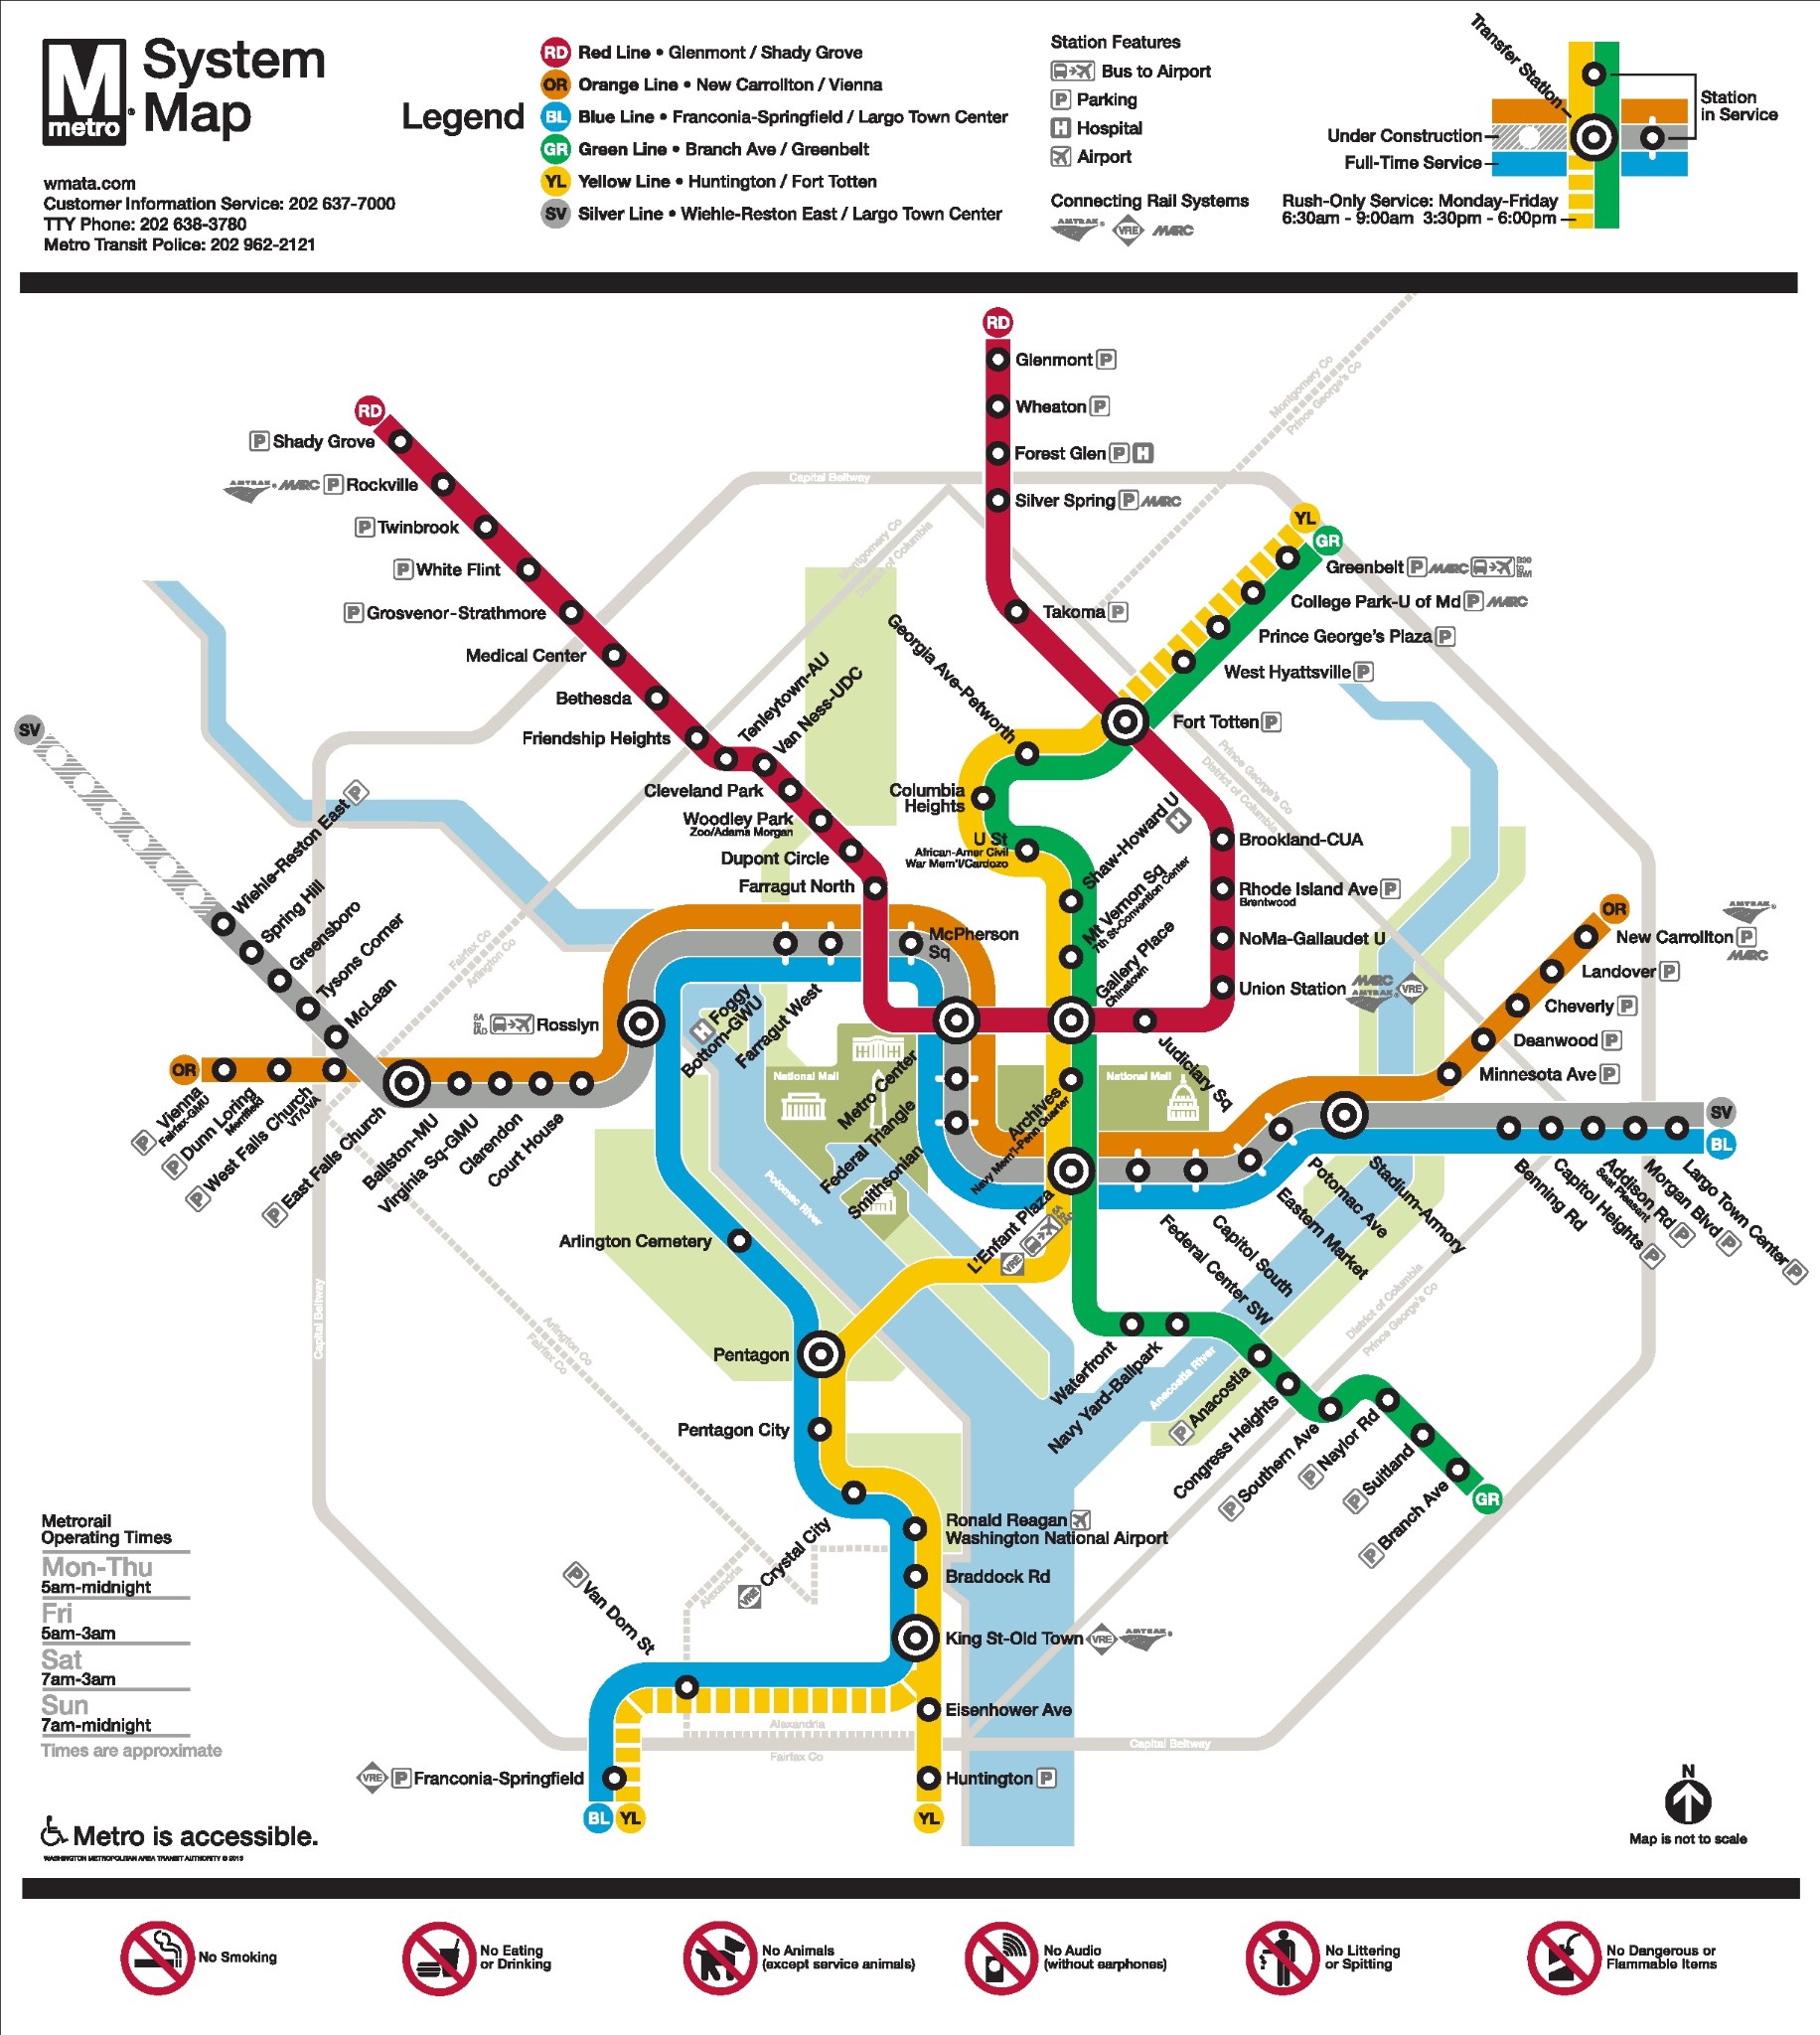 价格便宜,但是不建议搭乘大巴,还是地铁直观,下面是华盛顿地区的地铁